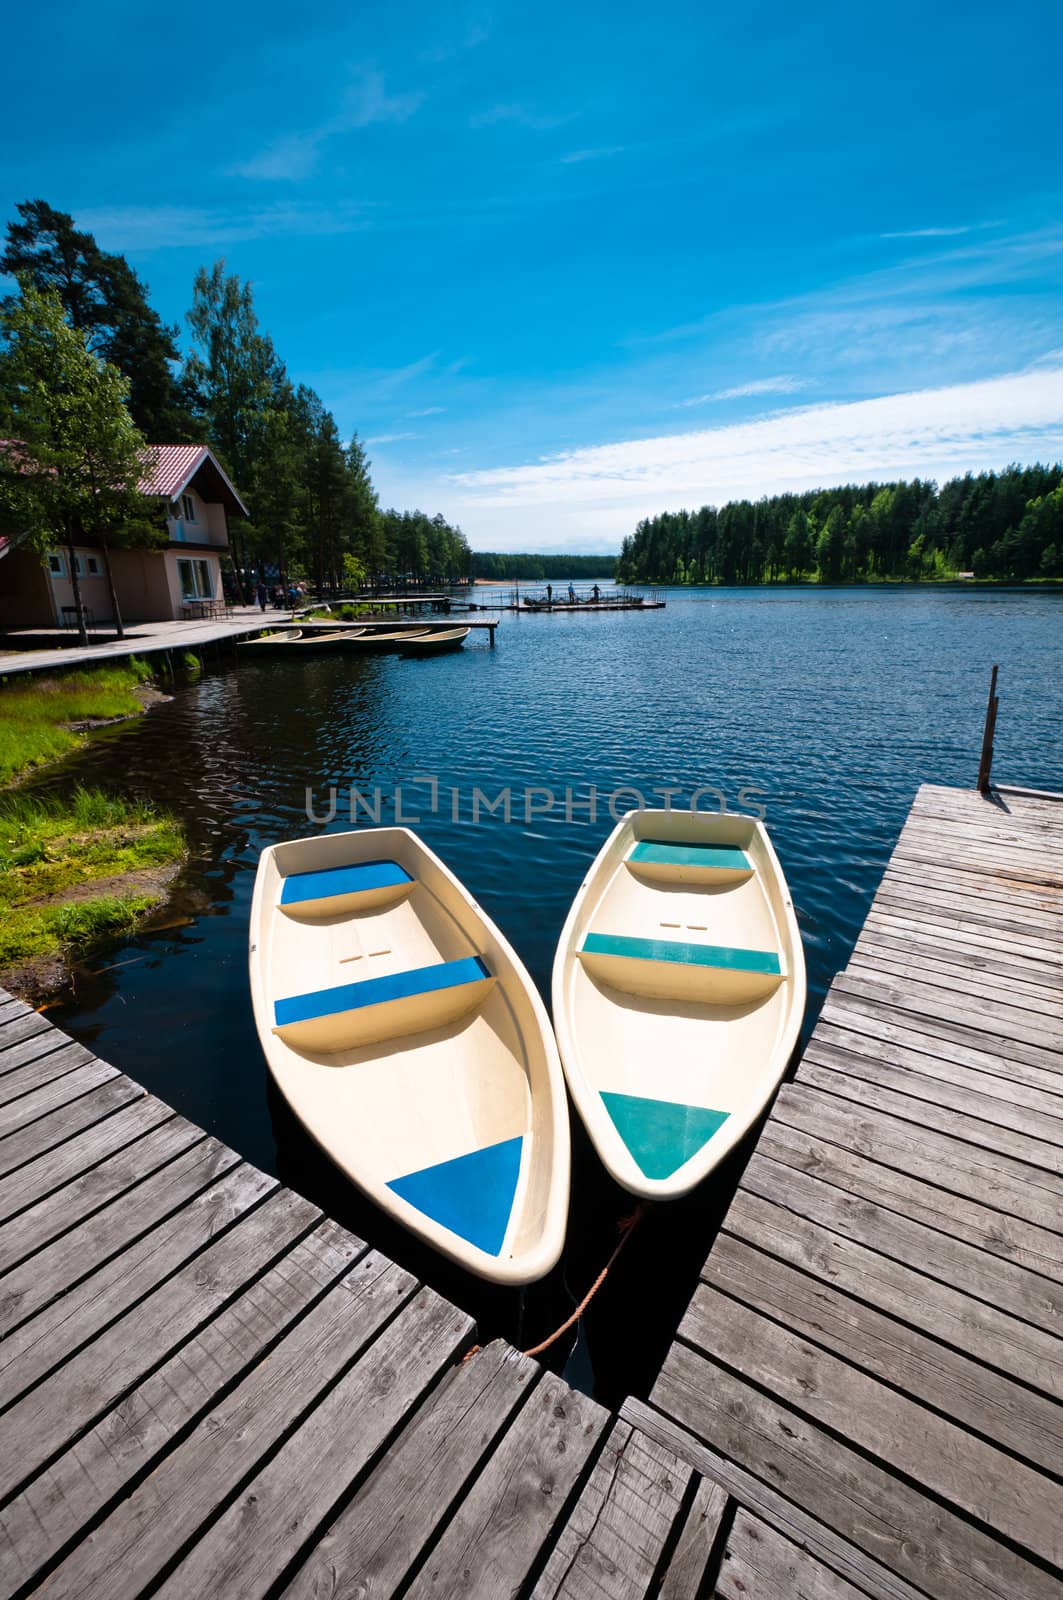 Two boats floating near pier by dmitryelagin